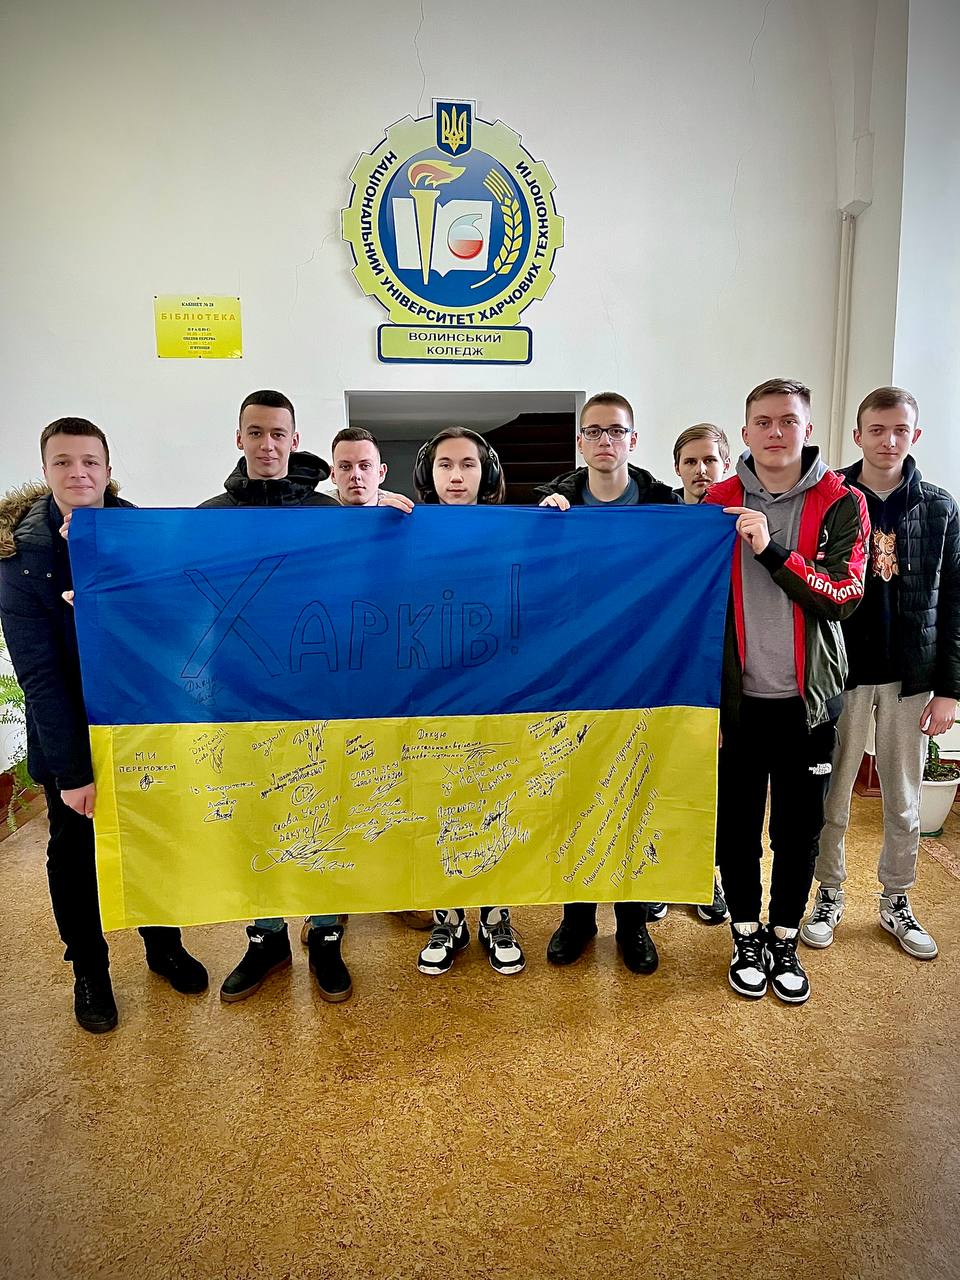 Український прапор завжди позиціонувався як військова святиня